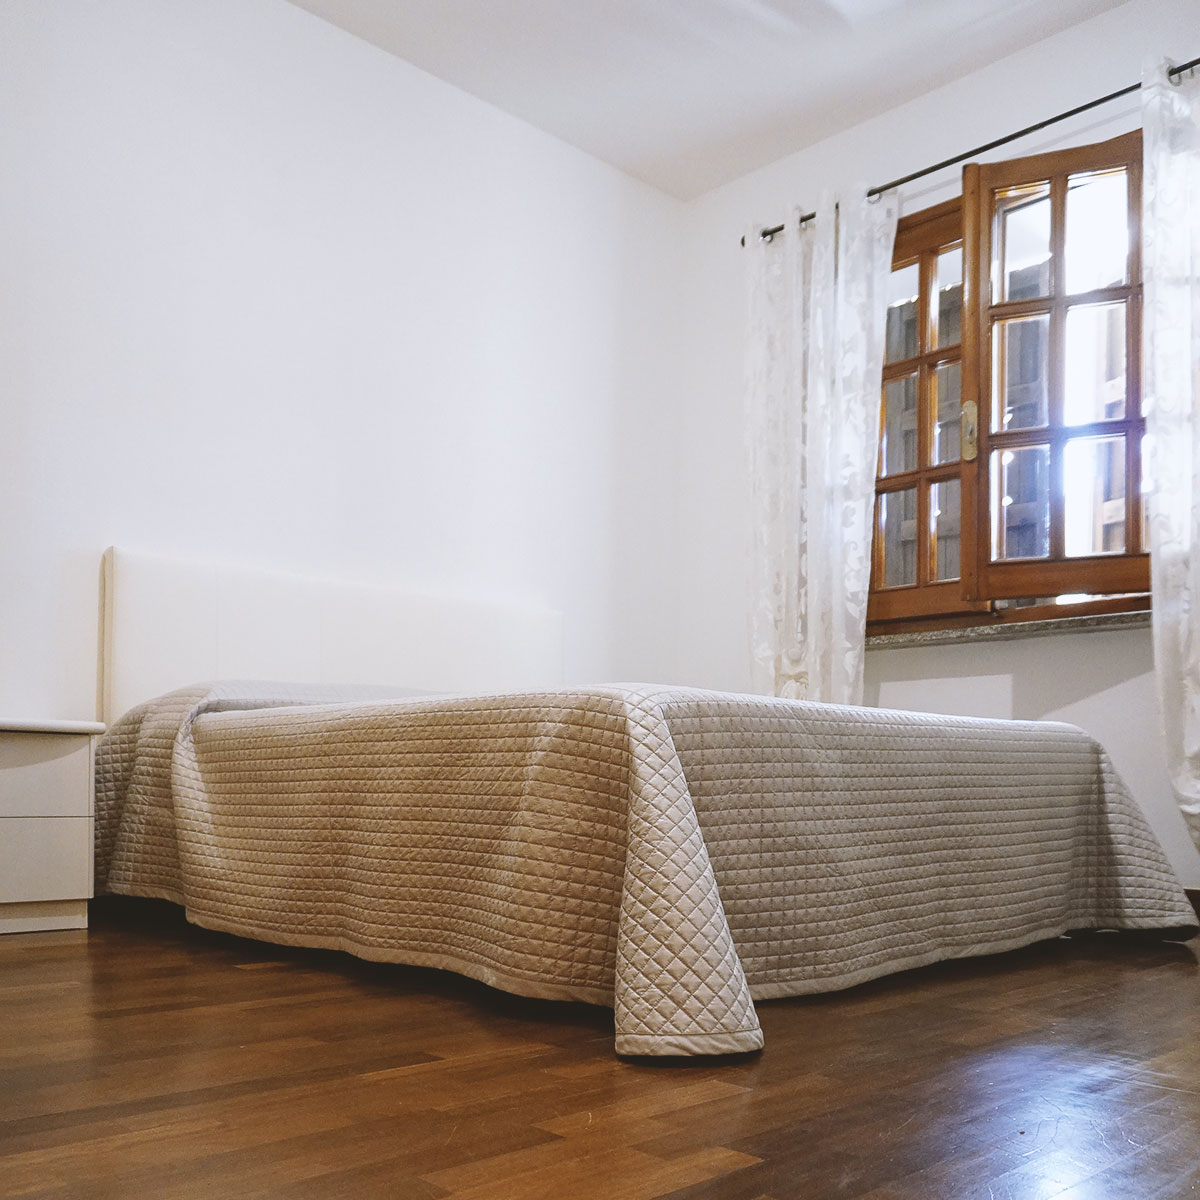 Seconda camera da letto con pavimento in parquet